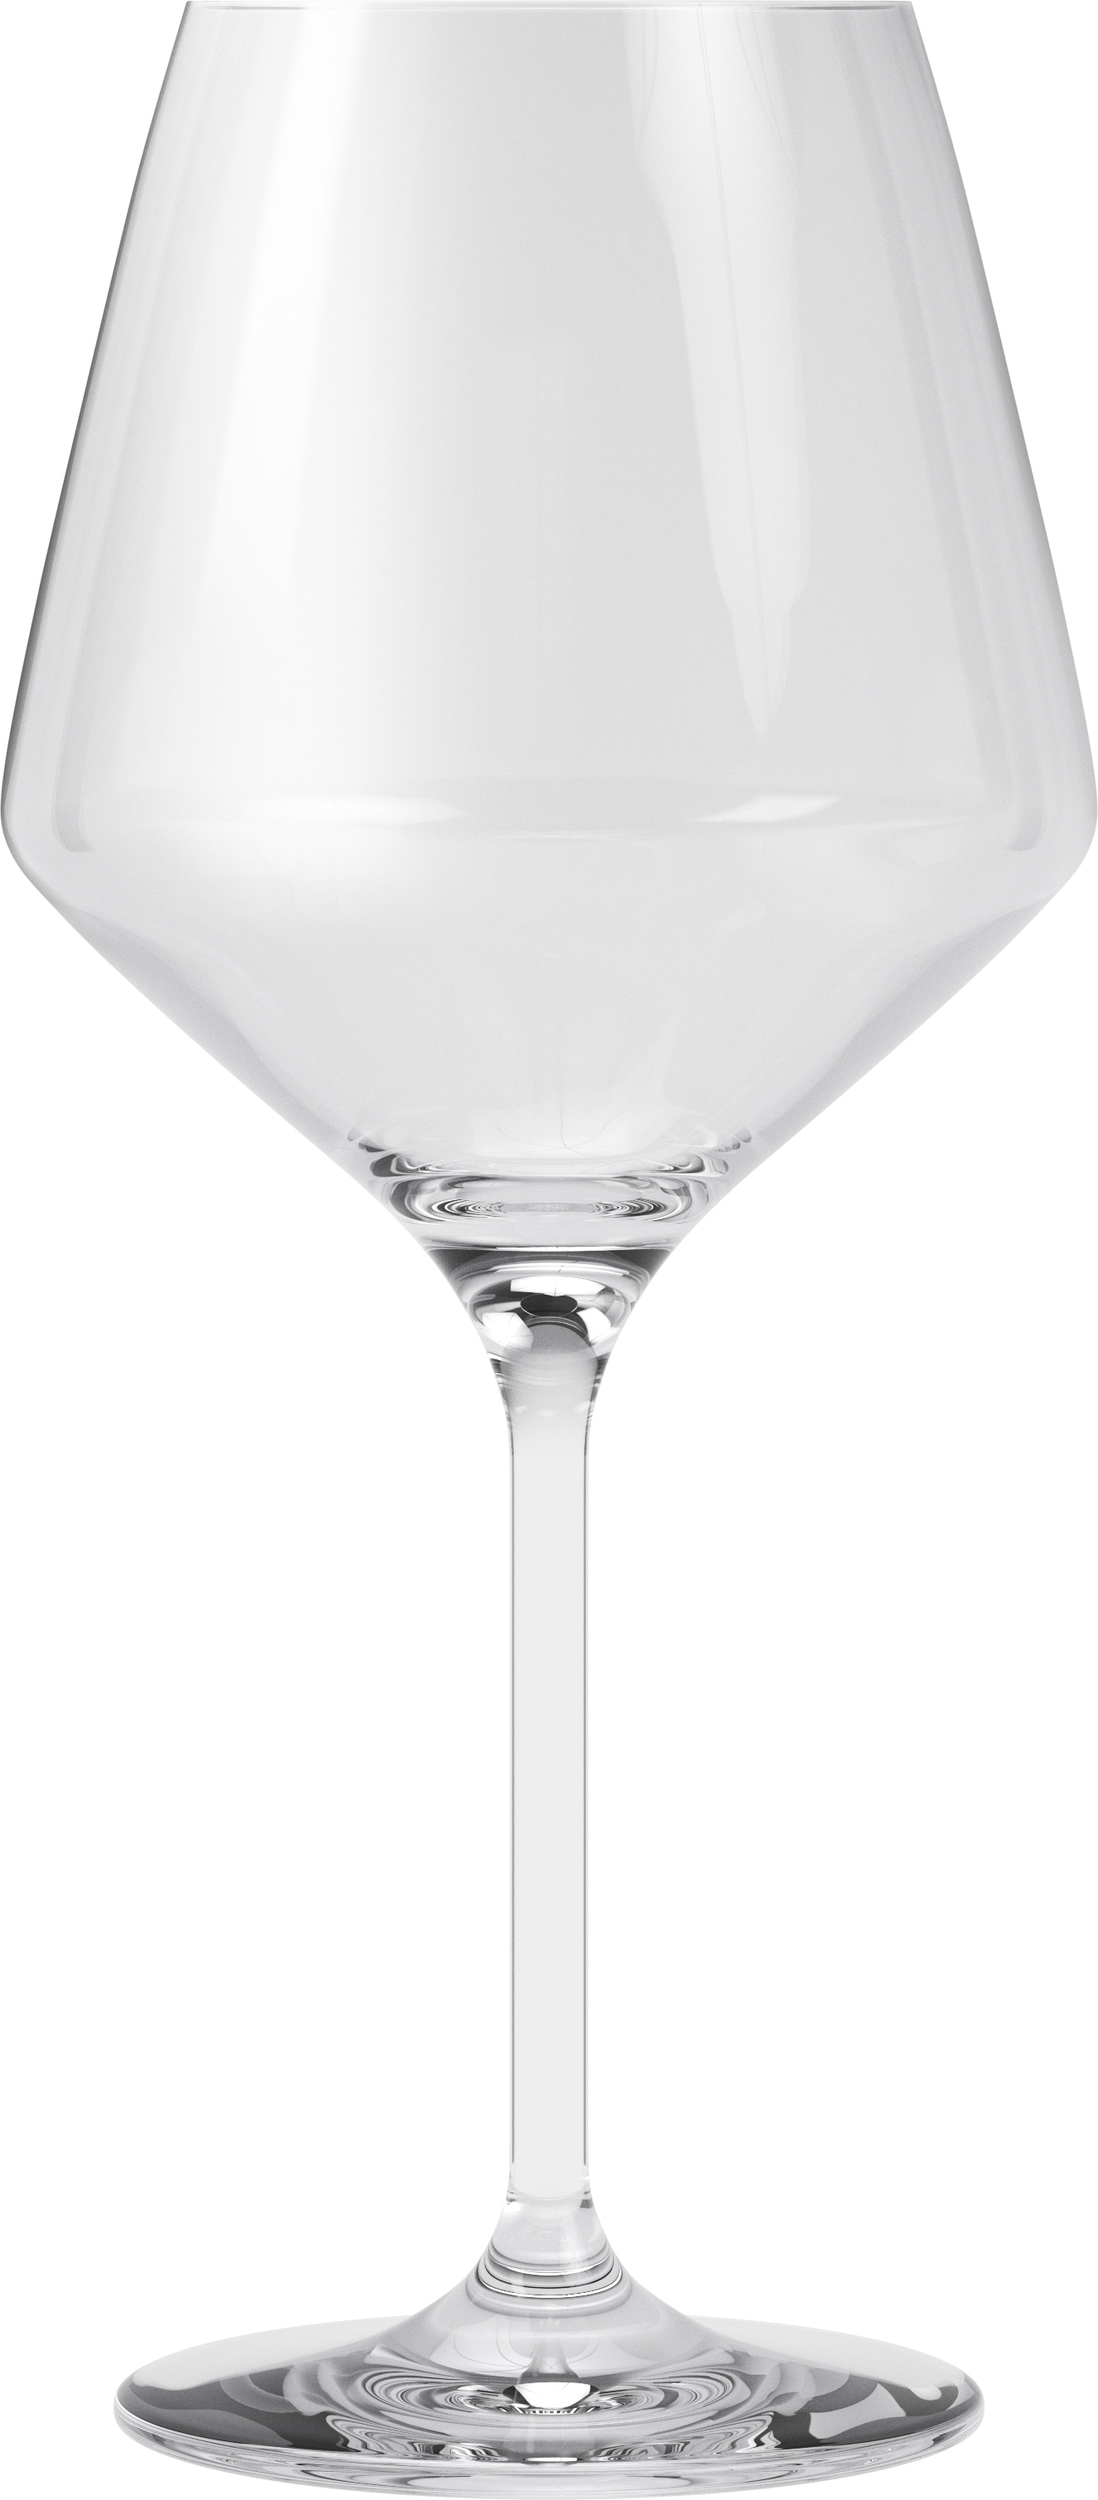 https://3fa-media.com/eva-solo/eva-solo-legio-nova-white-wine-glasses-6-pcs__139422_62d2369-s2500x2500.jpg